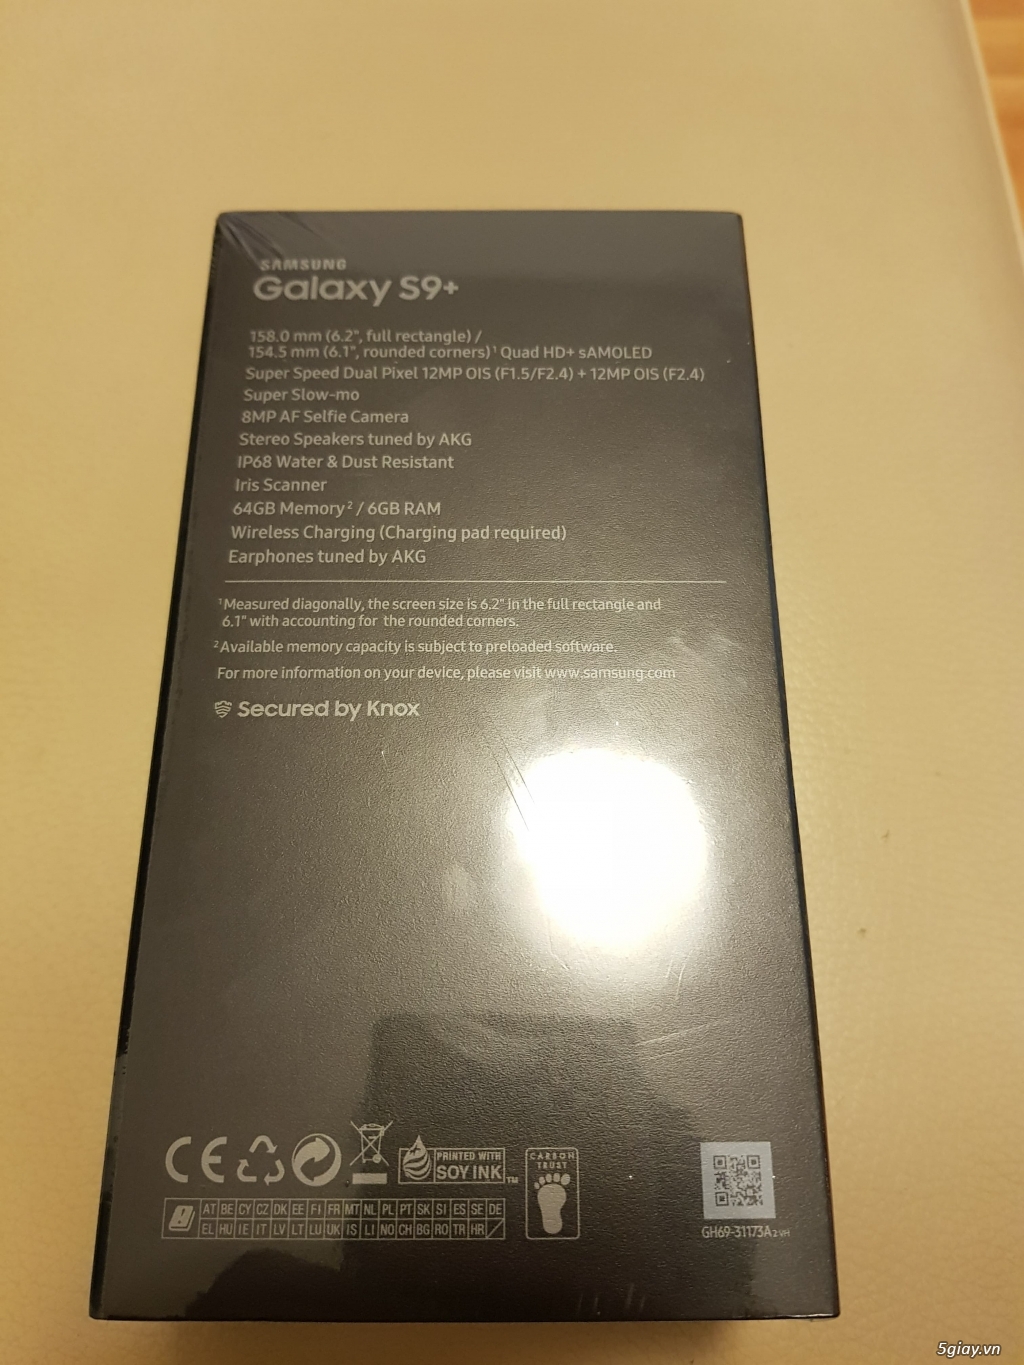 SAMSUNG GALAXY S9 PLUS (BLACK, 64GB) CHÍNH HÃNG, MỚI 100% - 3